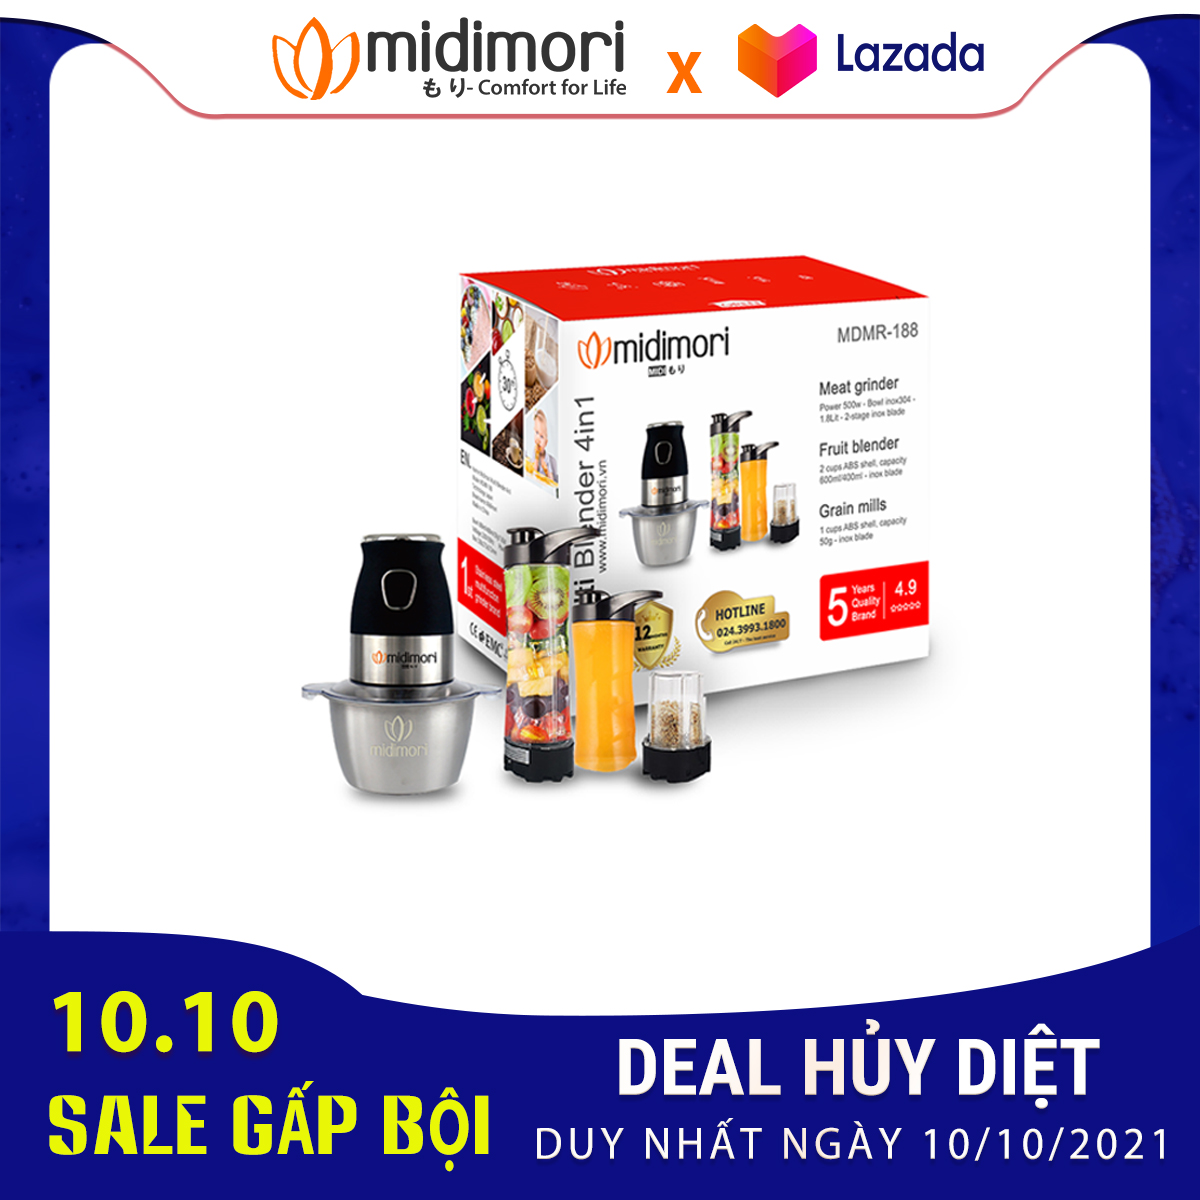 10-10- Midimori-lazada-sale-gap-boi-cung-trieu-deal-huy-diet